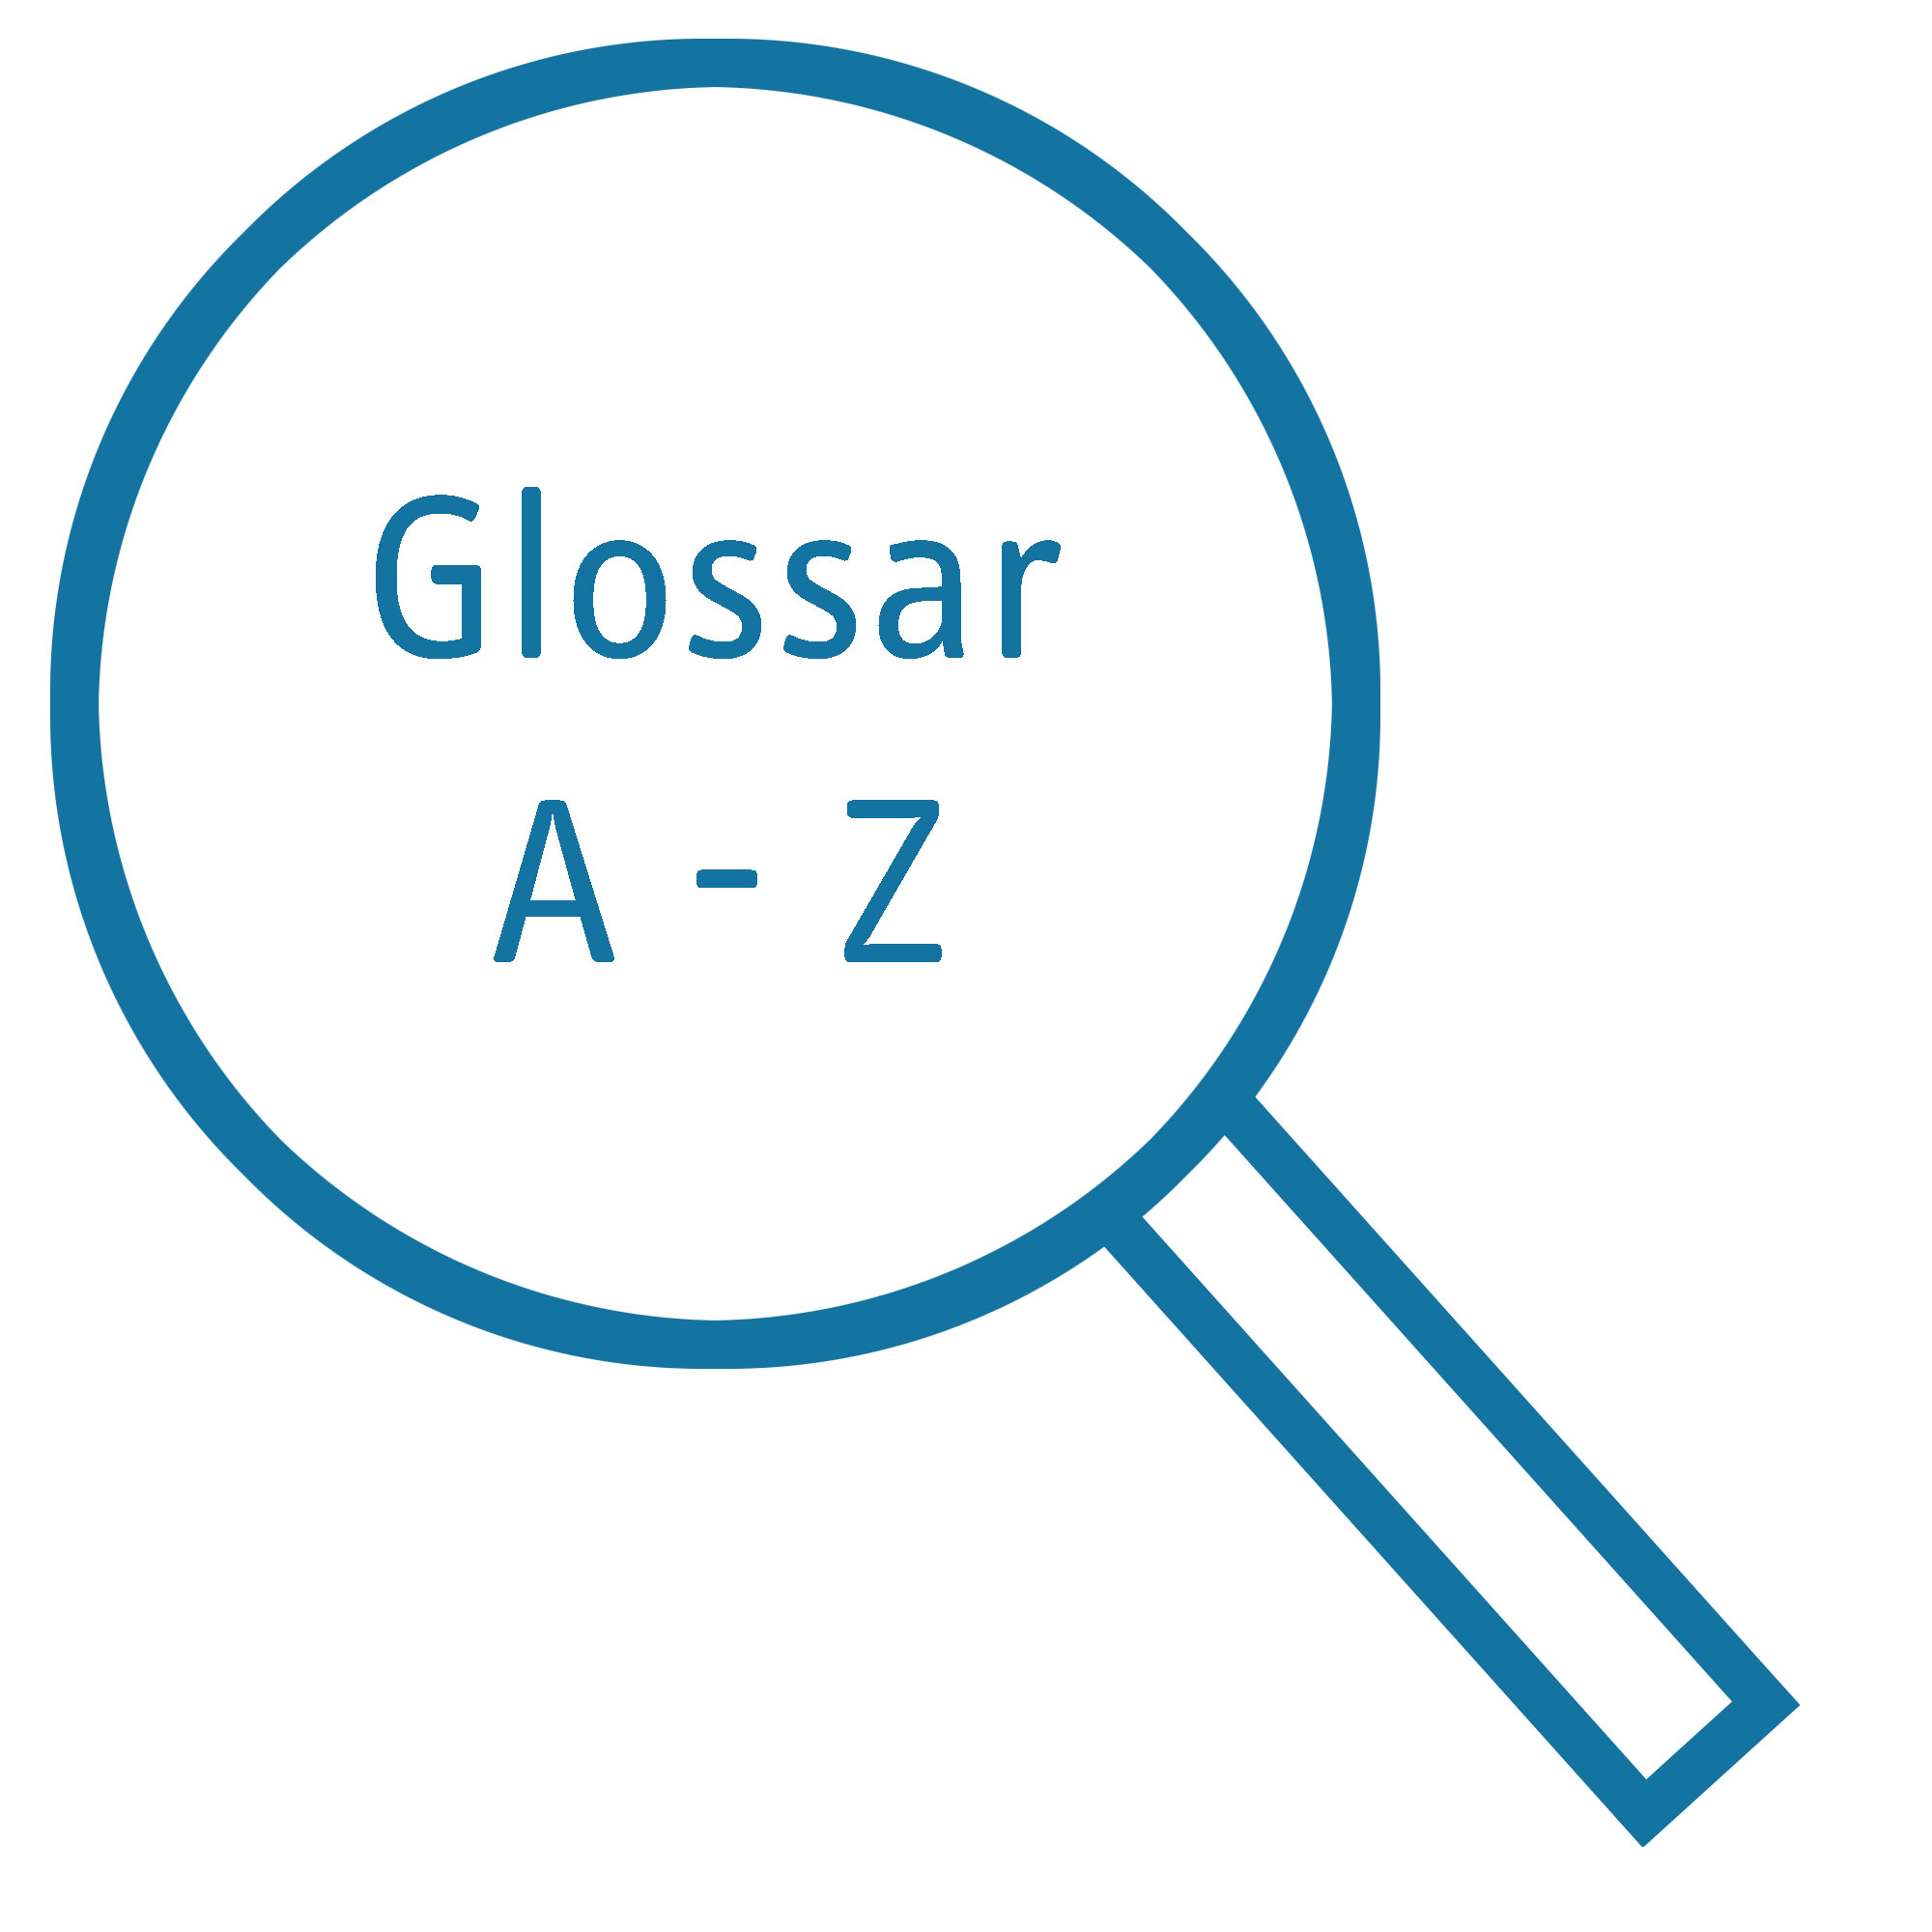 Lupe mit Aufschrift "Glossar A-Z"